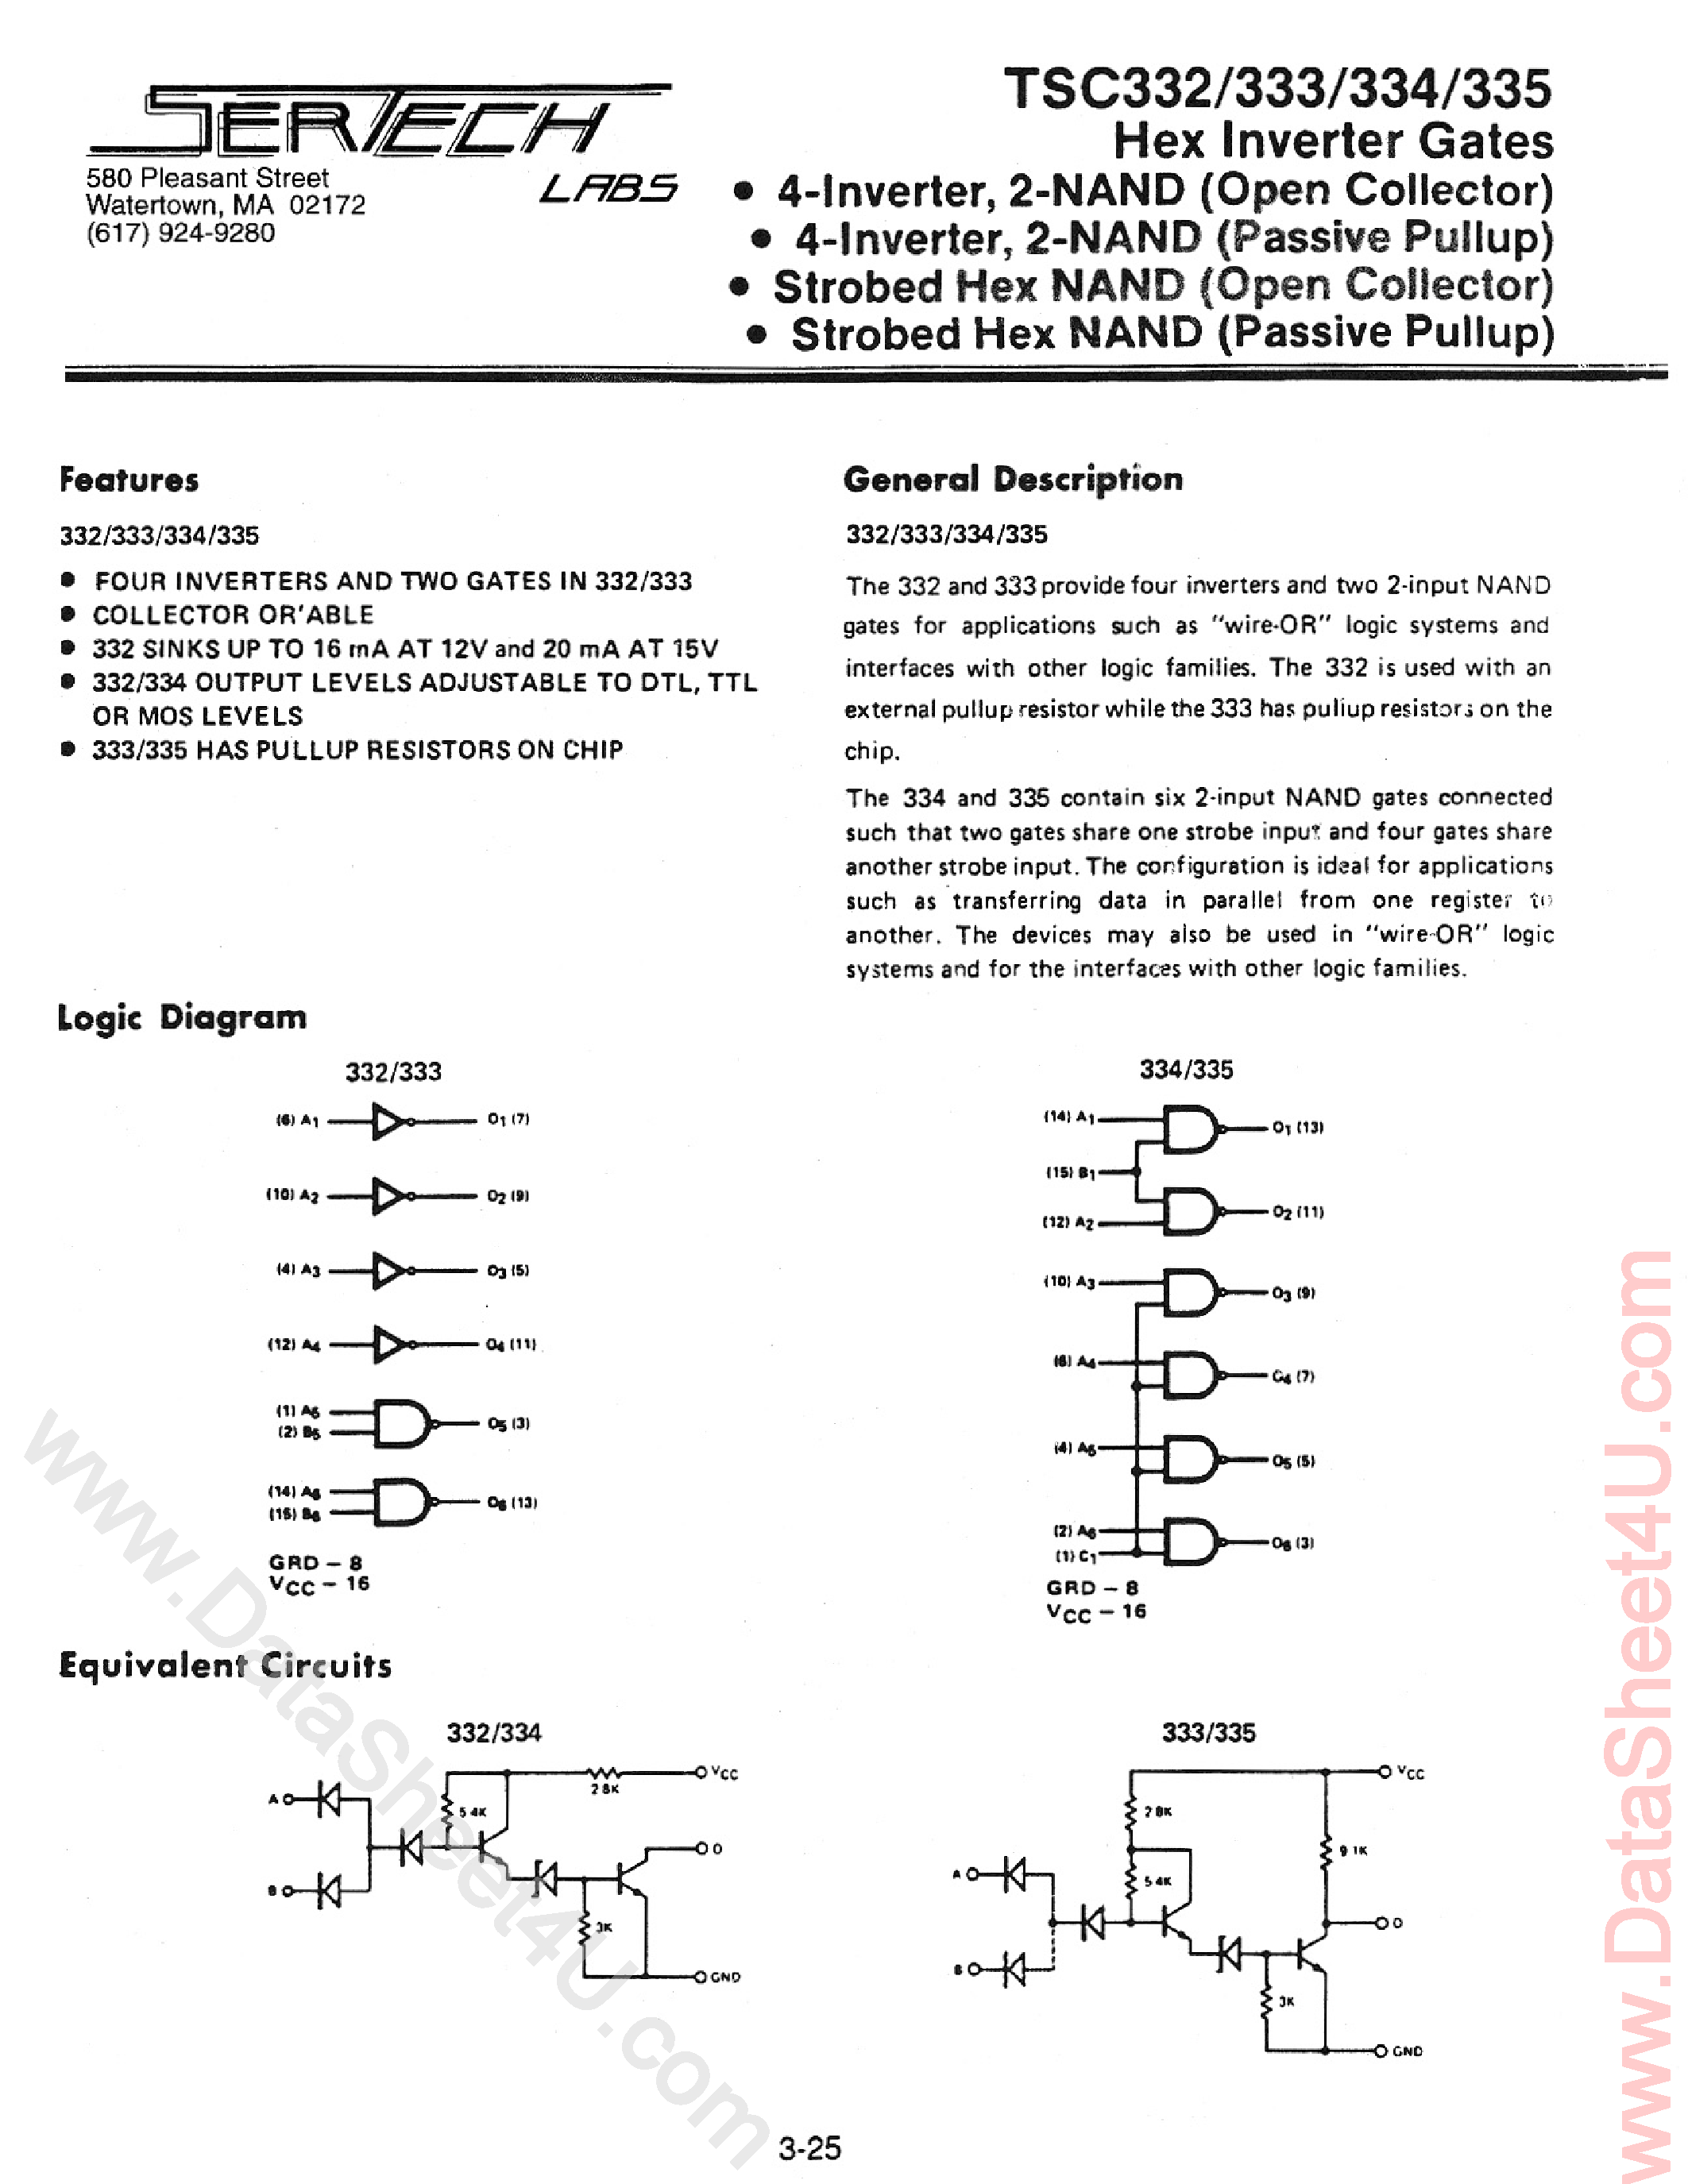 Datasheet TC332 - (TC332 - TC335) High Noise Immunity Logic page 1